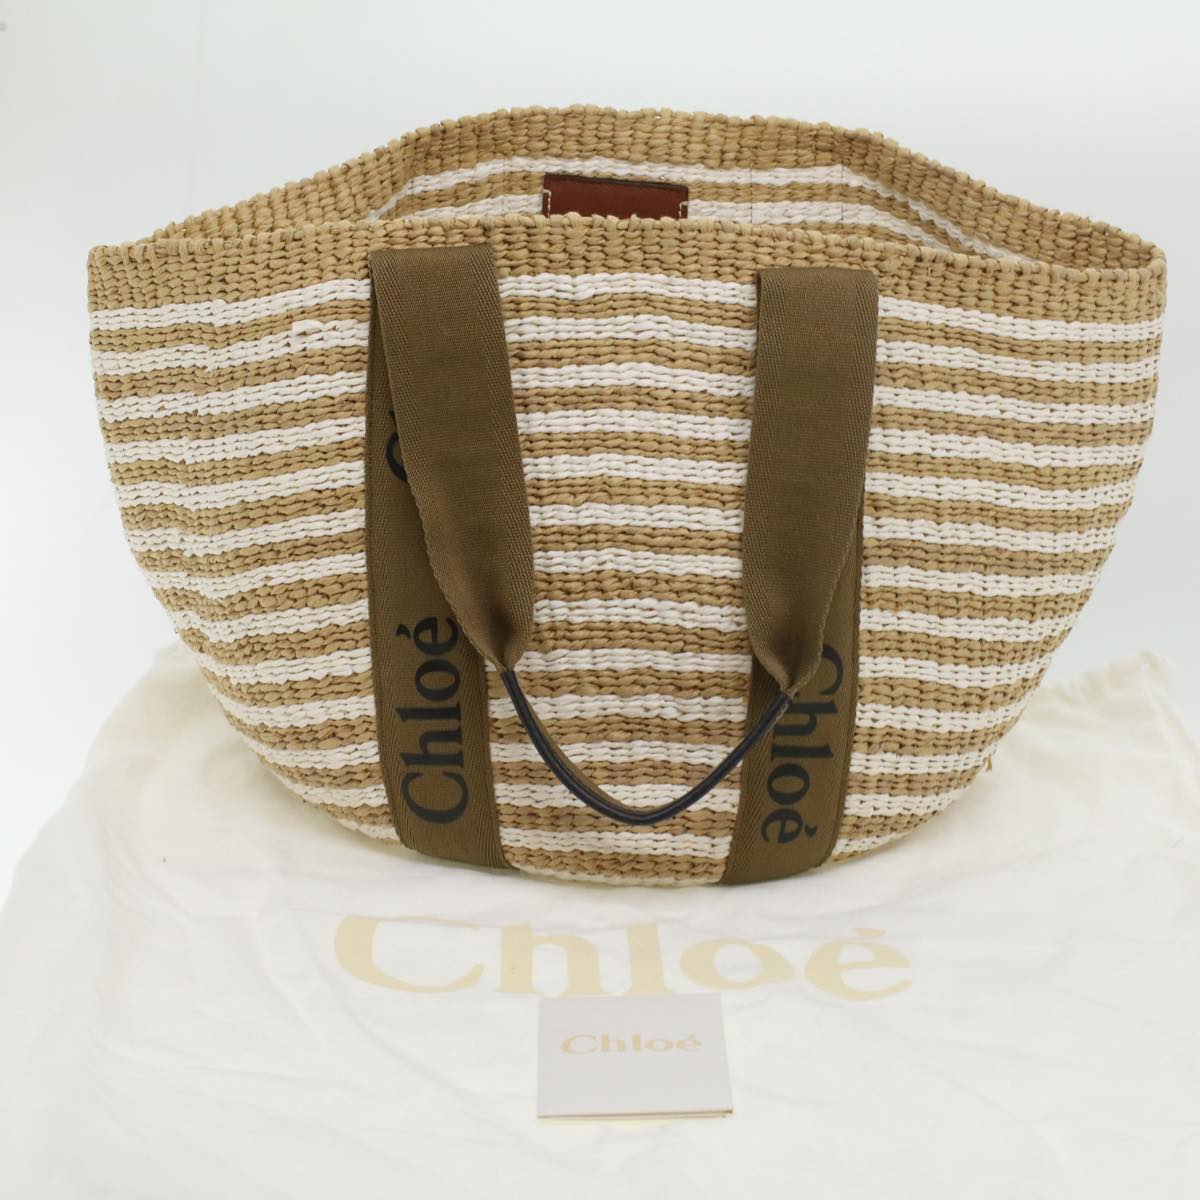 Chloe Straw BagBag Hand Bag straw White Beige Auth 38059